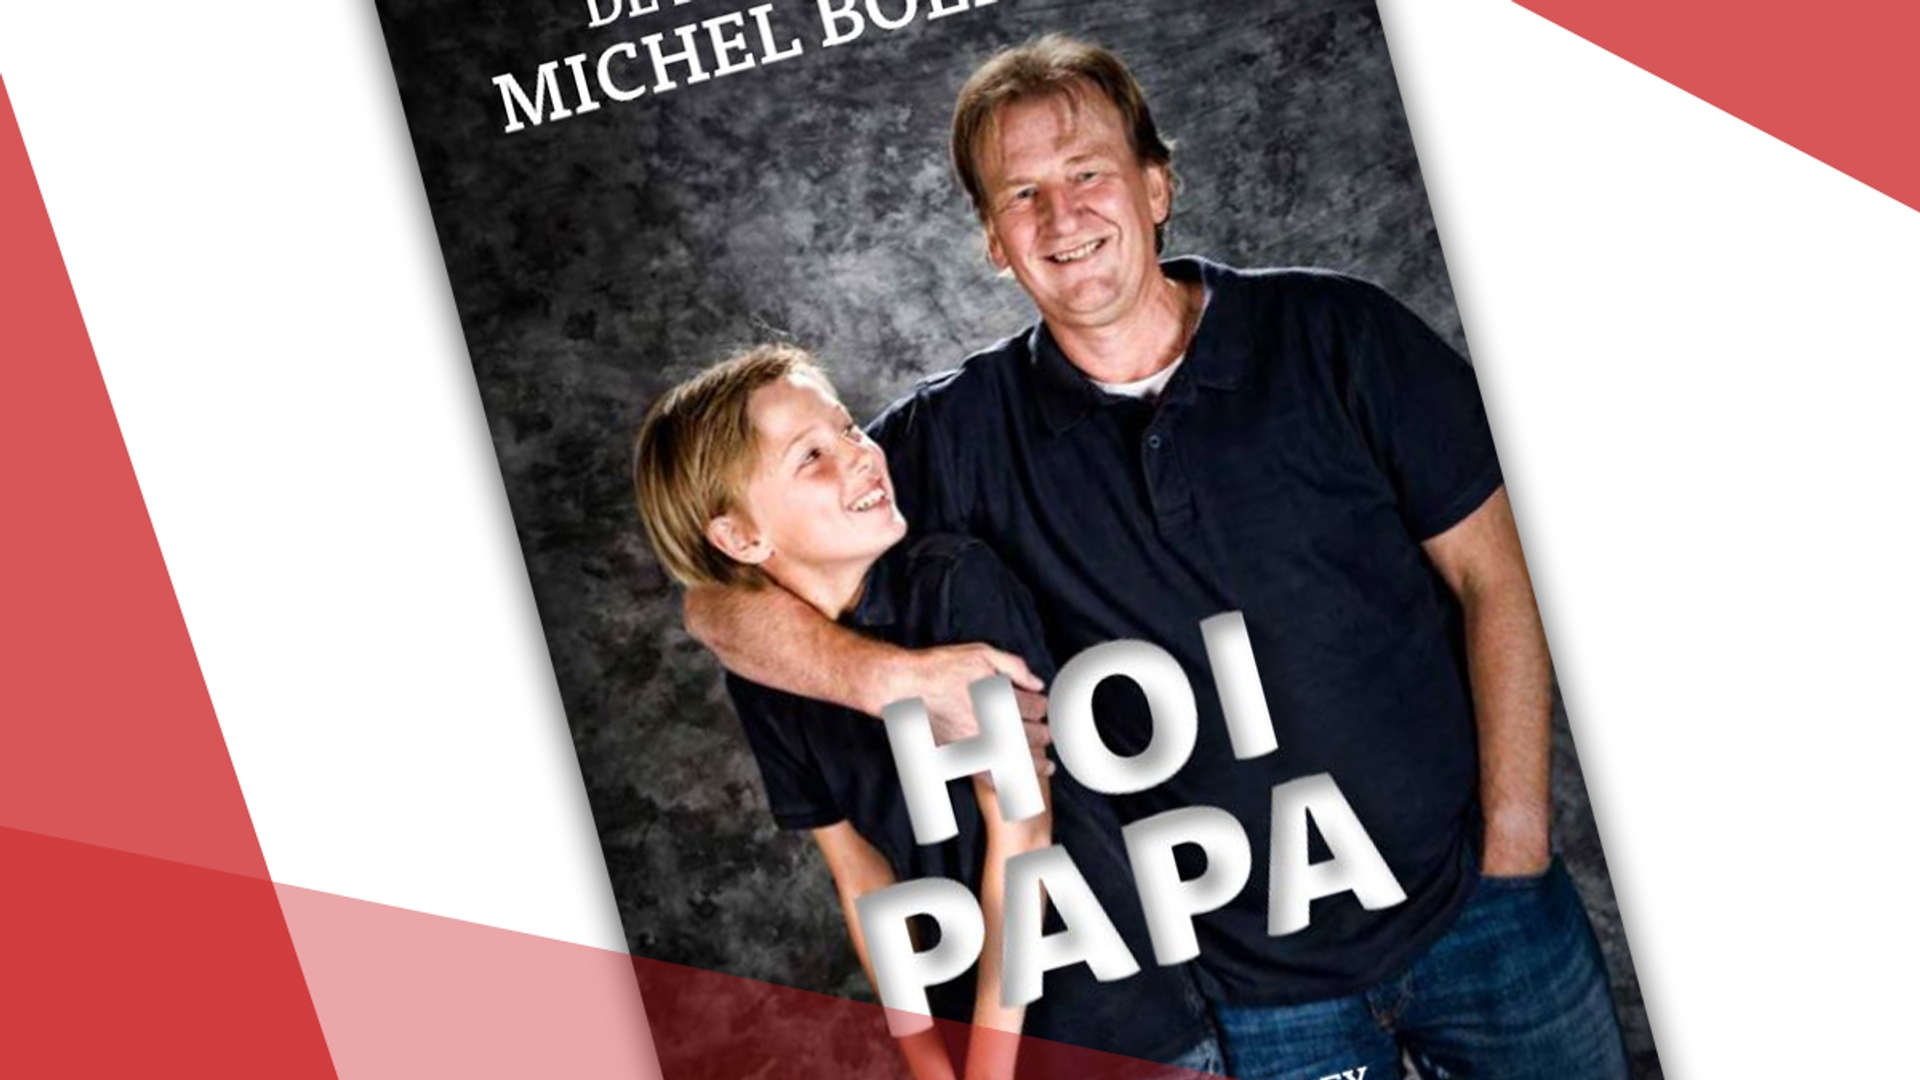 Hoi Papa - Michel Boerebach